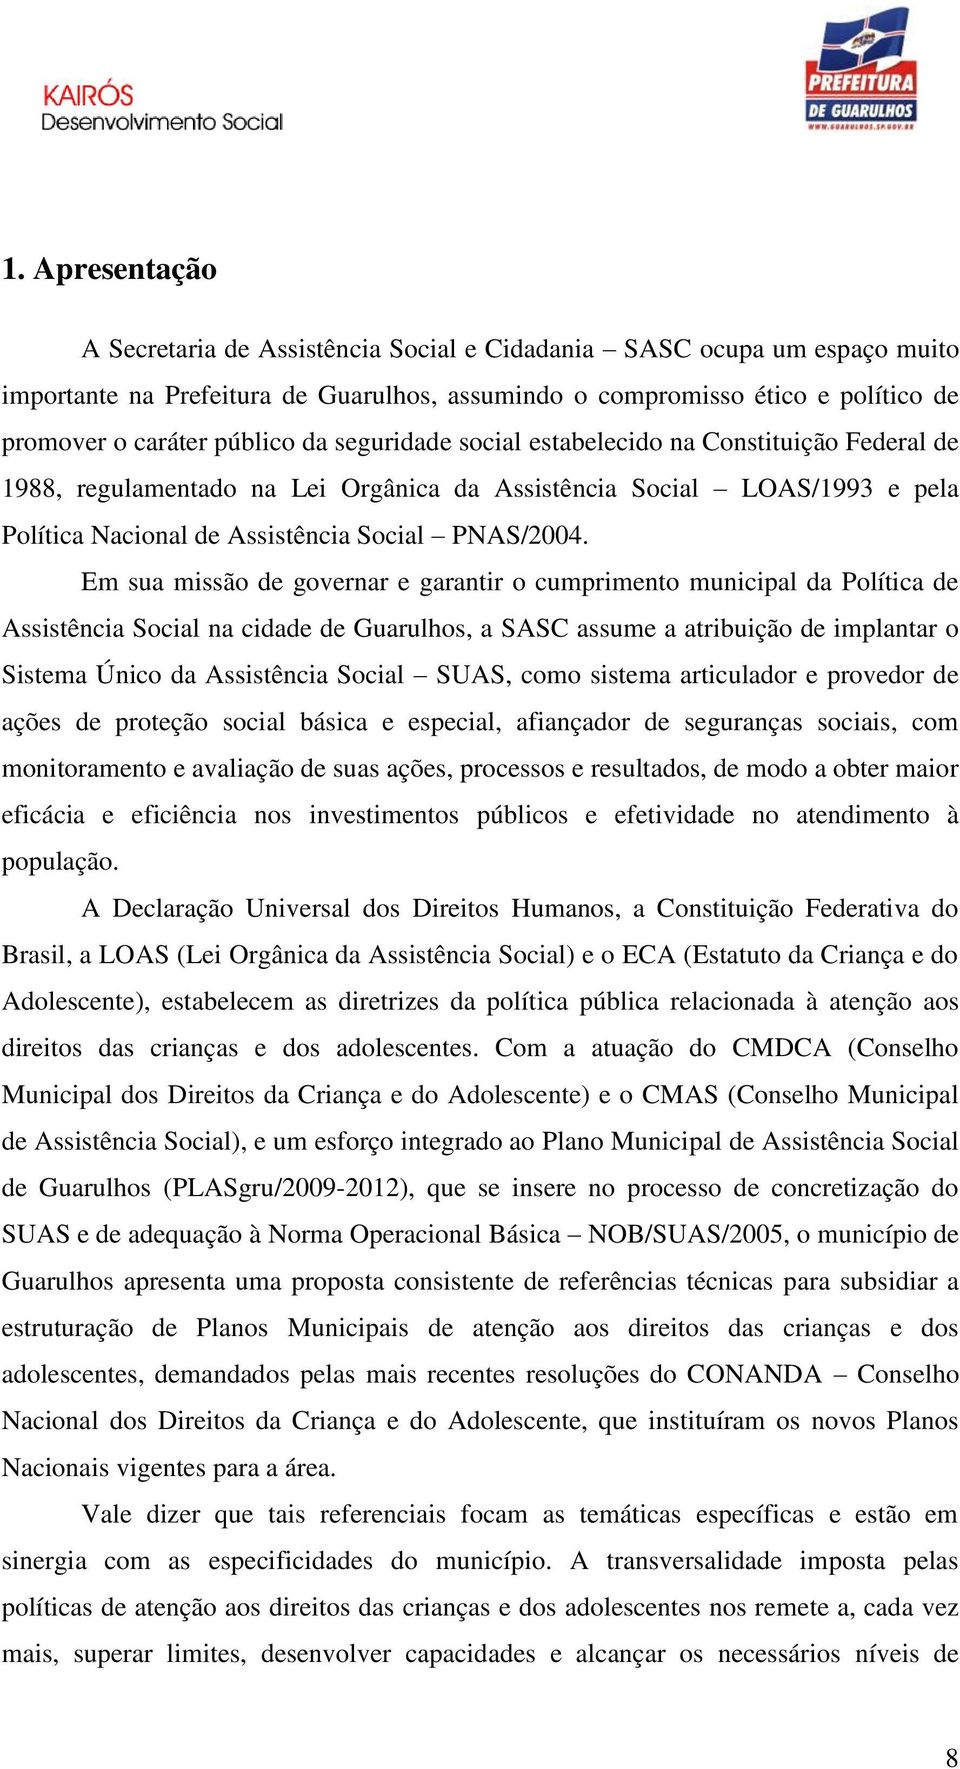 Em sua missão de governar e garantir o cumprimento municipal da Política de Assistência Social na cidade de Guarulhos, a SASC assume a atribuição de implantar o Sistema Único da Assistência Social